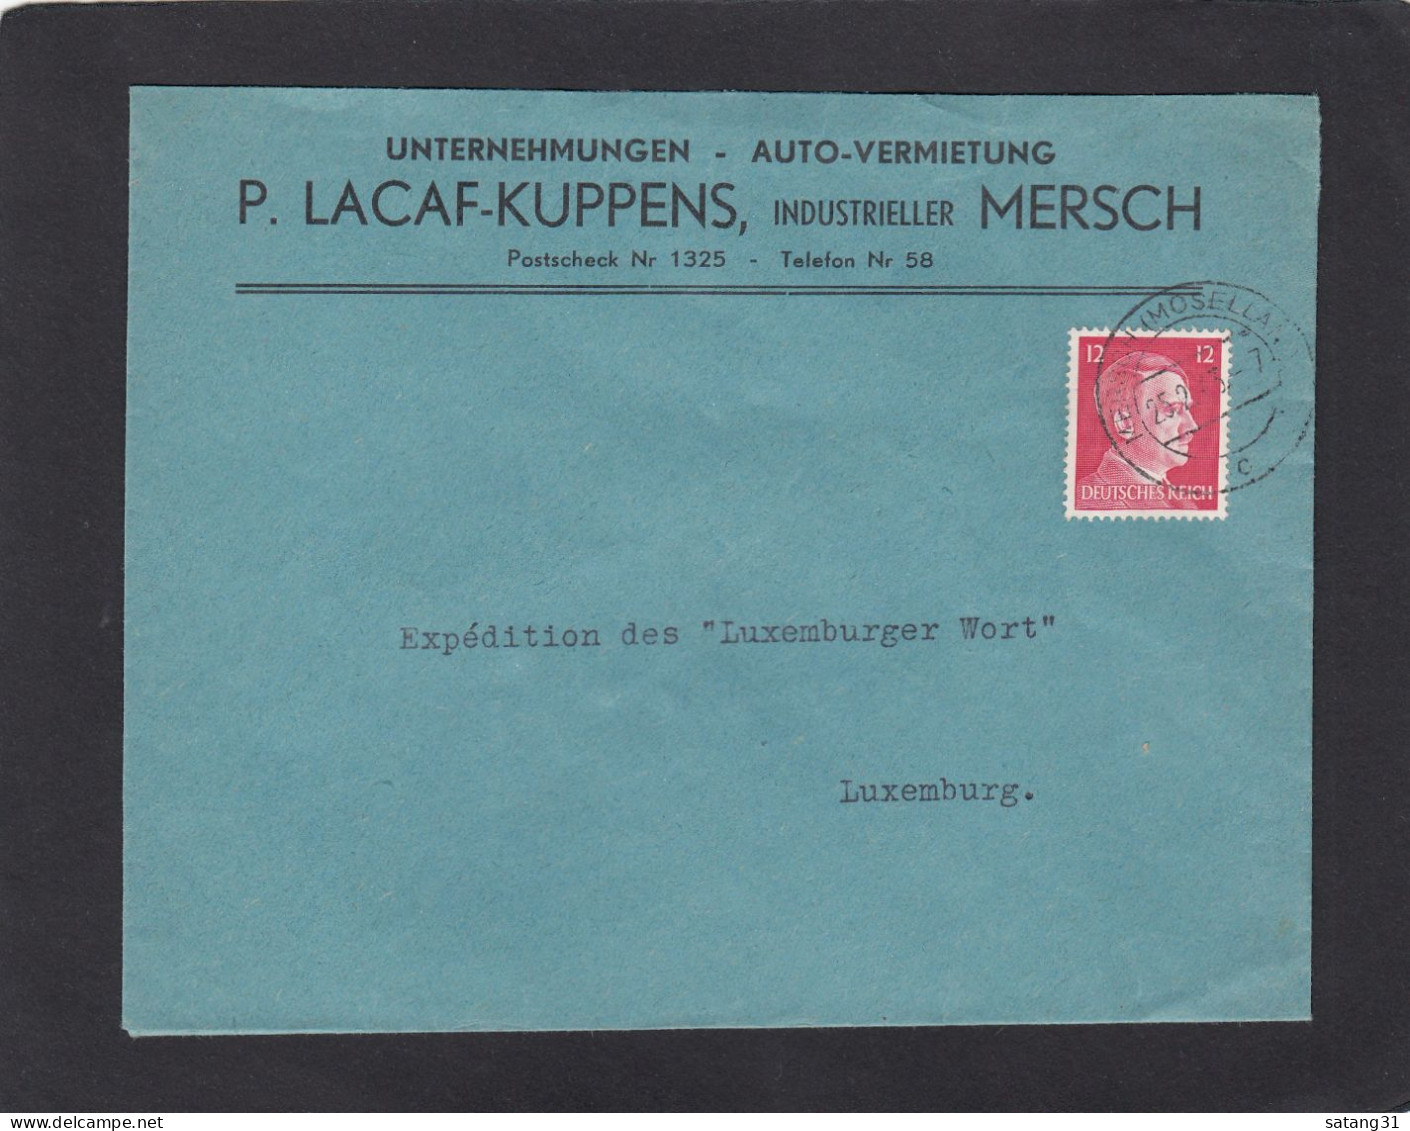 UNTERNEHMUNGEN - AUTO-VERMIETUNG, MERSCH. - 1940-1944 German Occupation